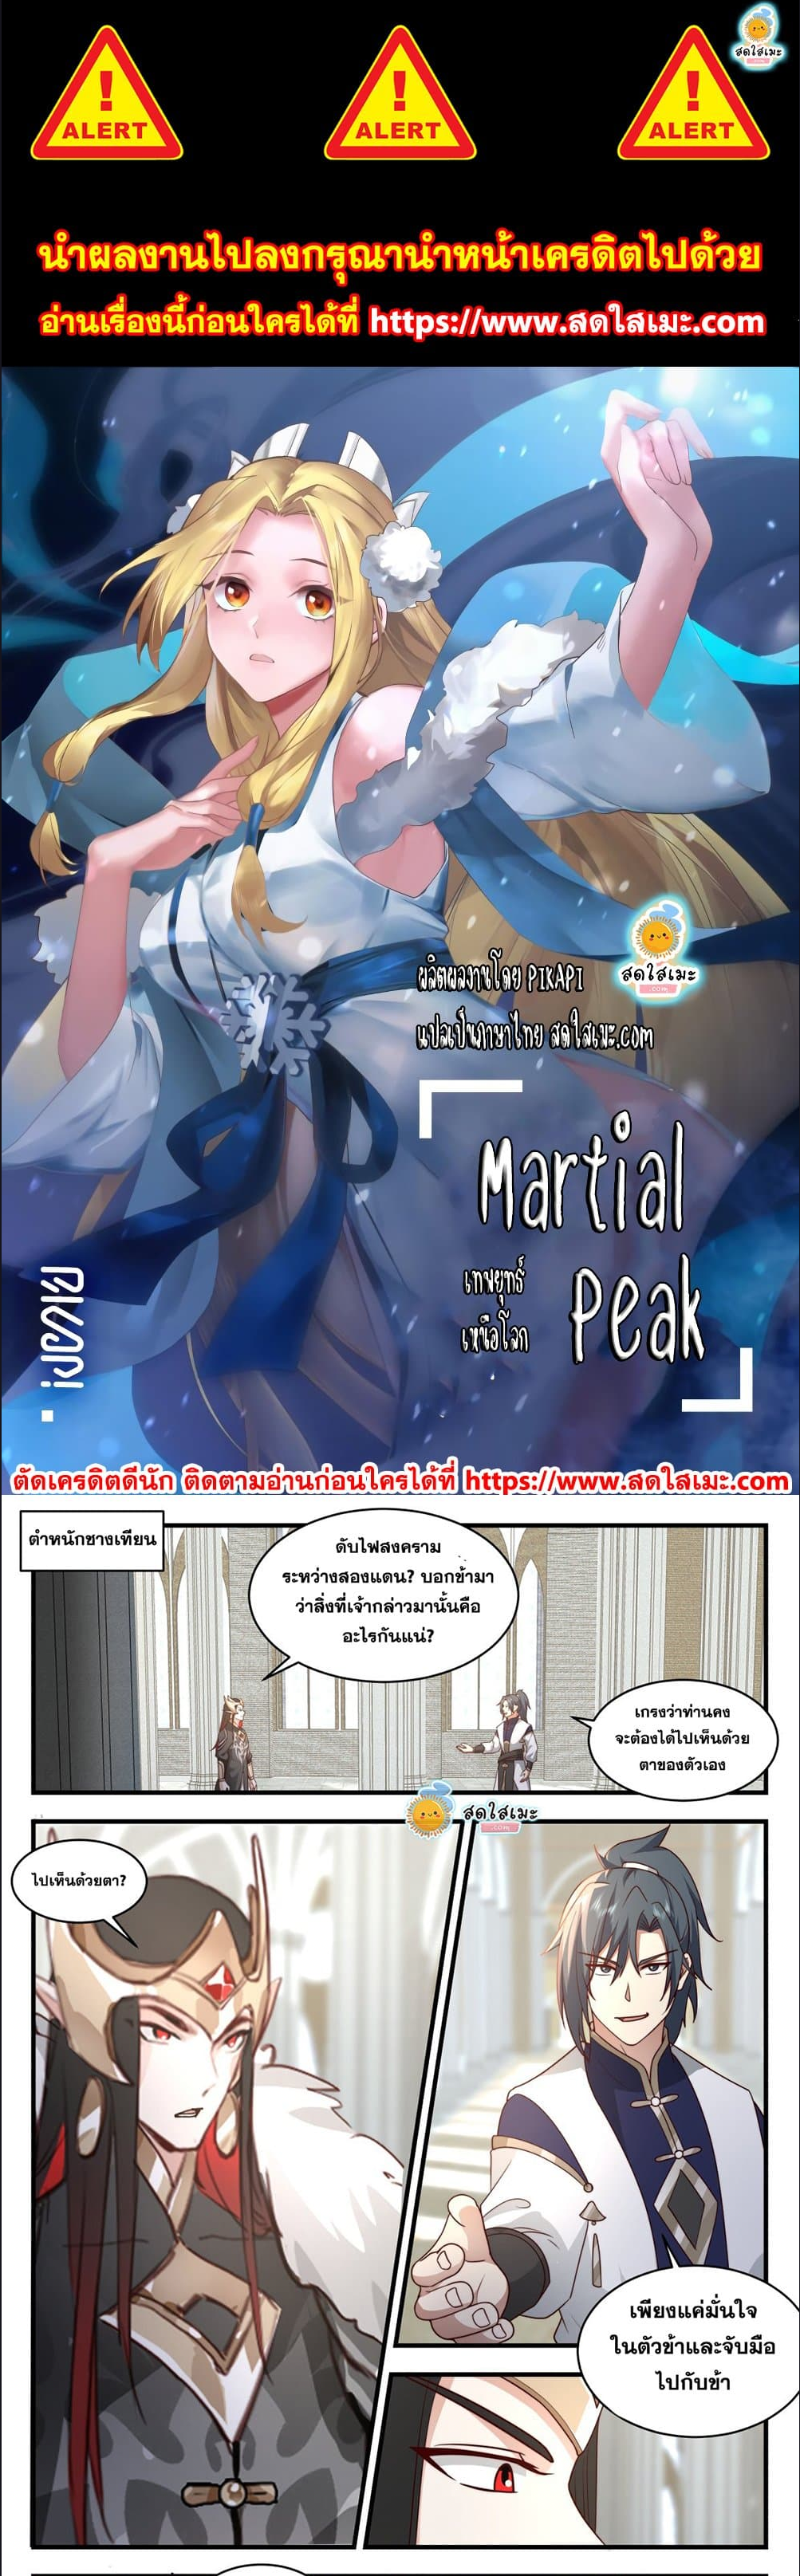 Martial-Peak---2450-1.png